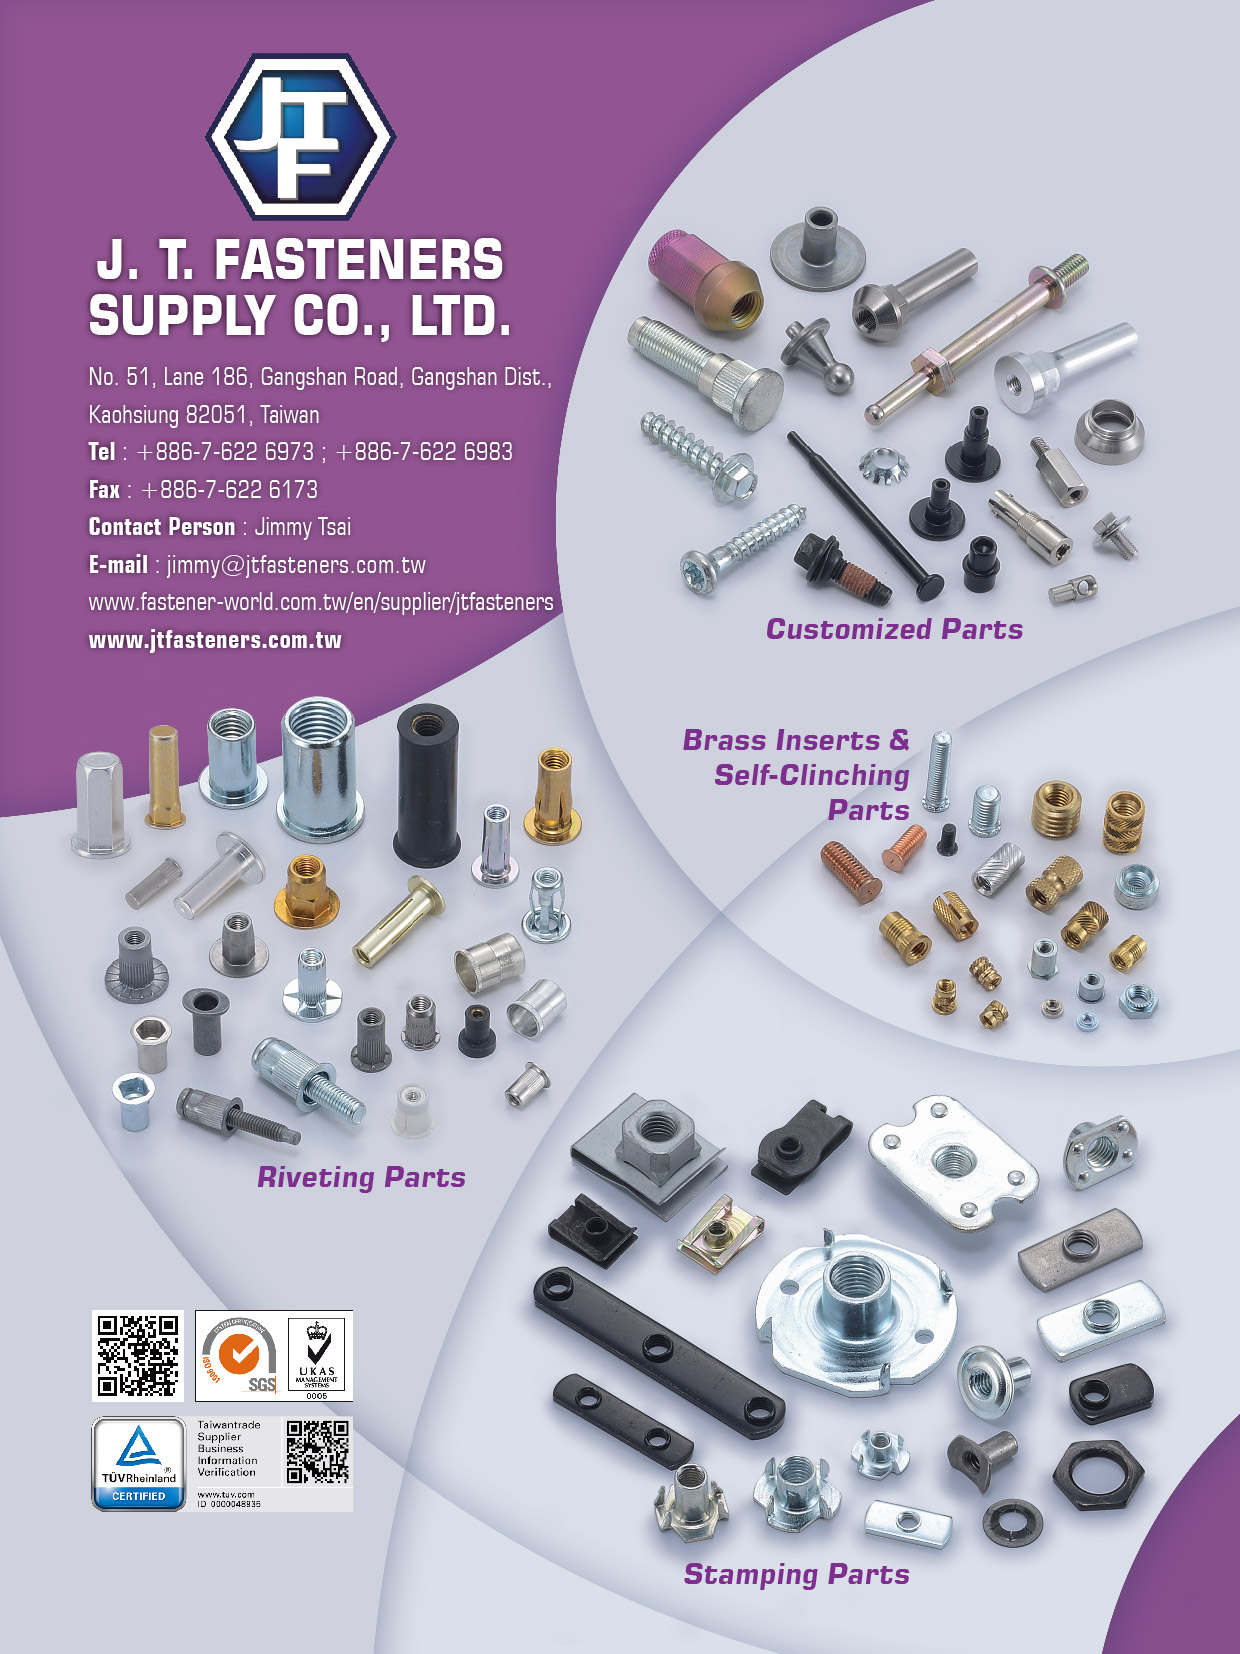 金祐昇实业有限公司 (J. T. Fasteners Supply Co., Ltd.)  電子型錄專區